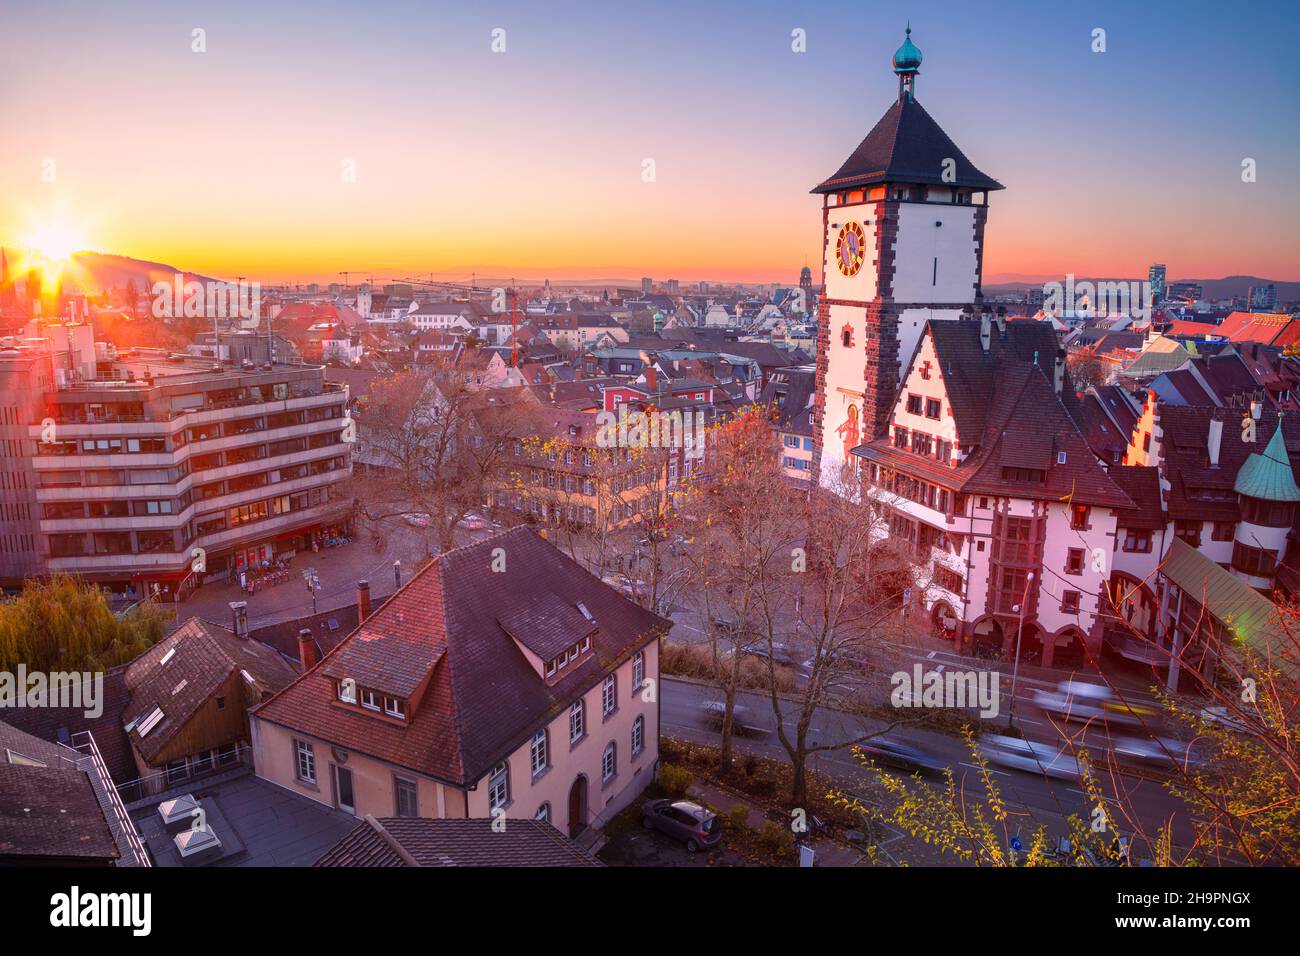 Freiburg im Breisgau, Deutschland. Luftbild von Freiburg im Breisgau, Deutschland mit Schwäbischem Tor bei Herbstuntergang. Stockfoto